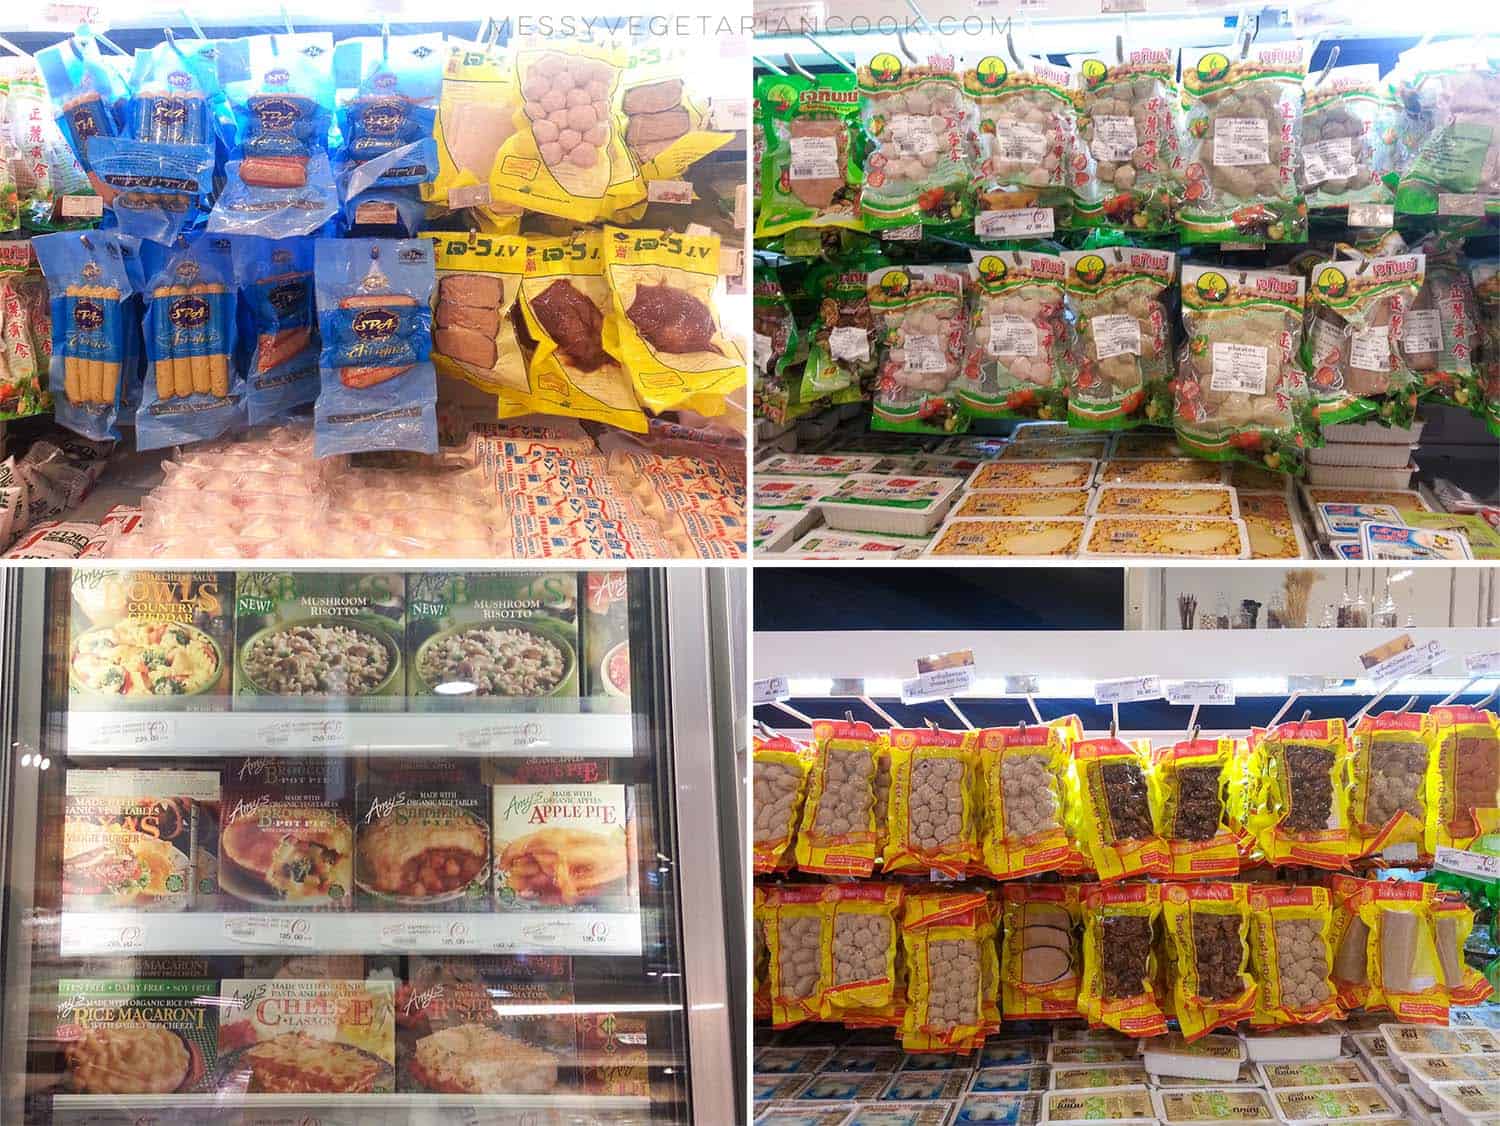 vegetarian options at bangkok supermarkets